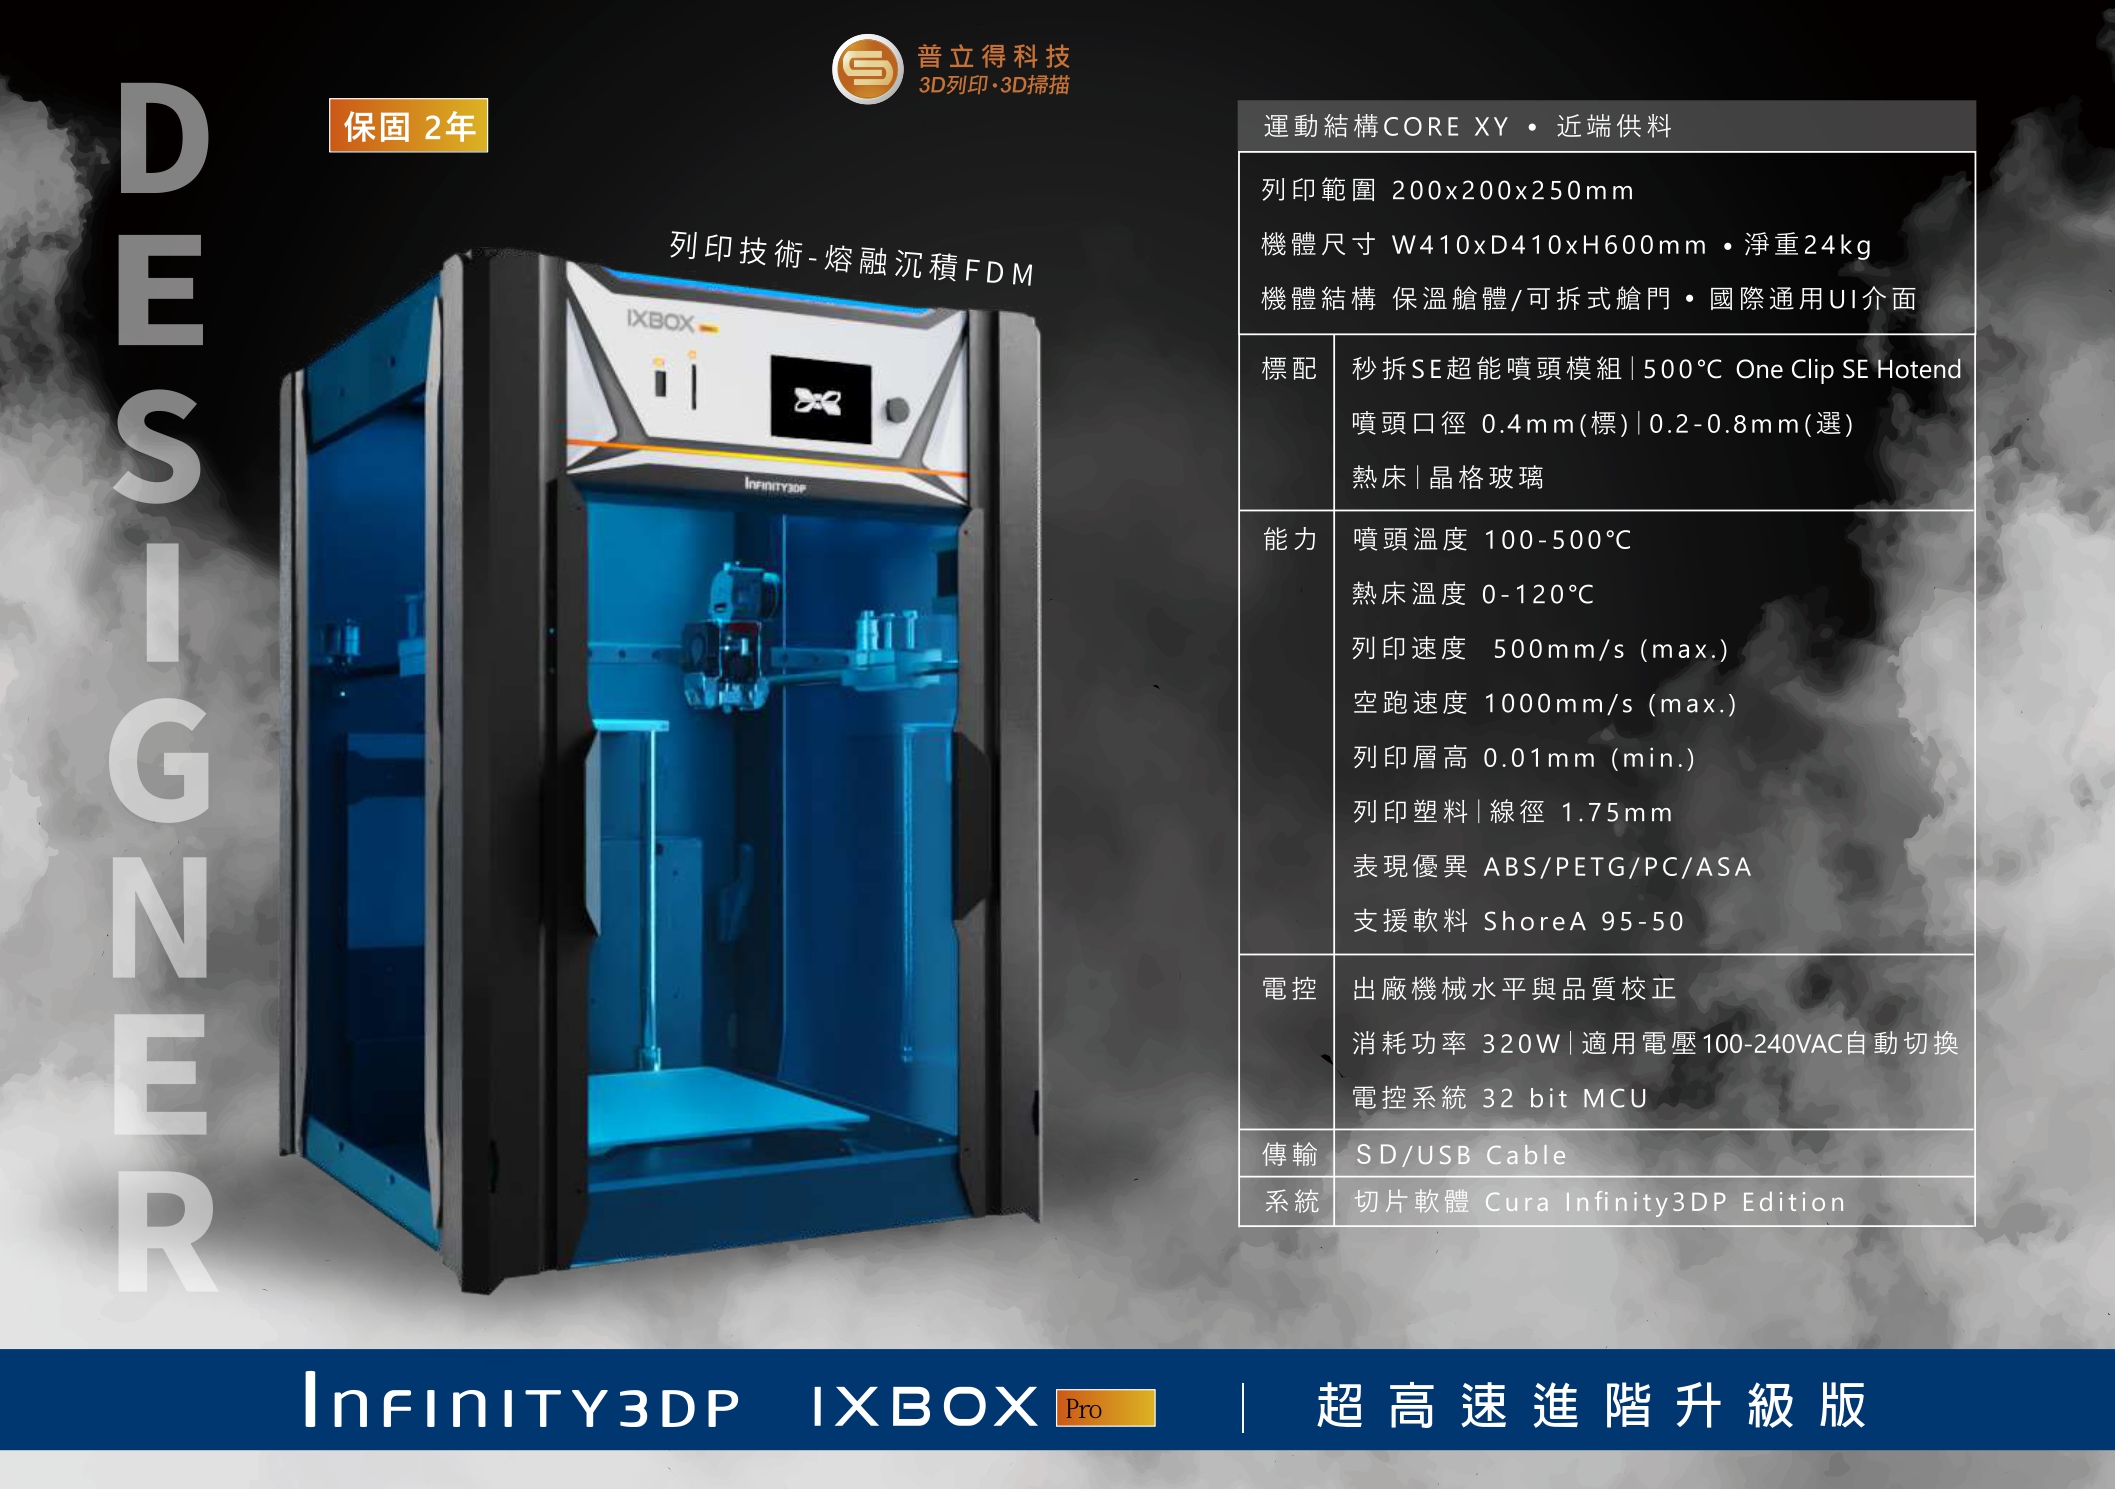 IXBOX PRO 工業級3D列印機